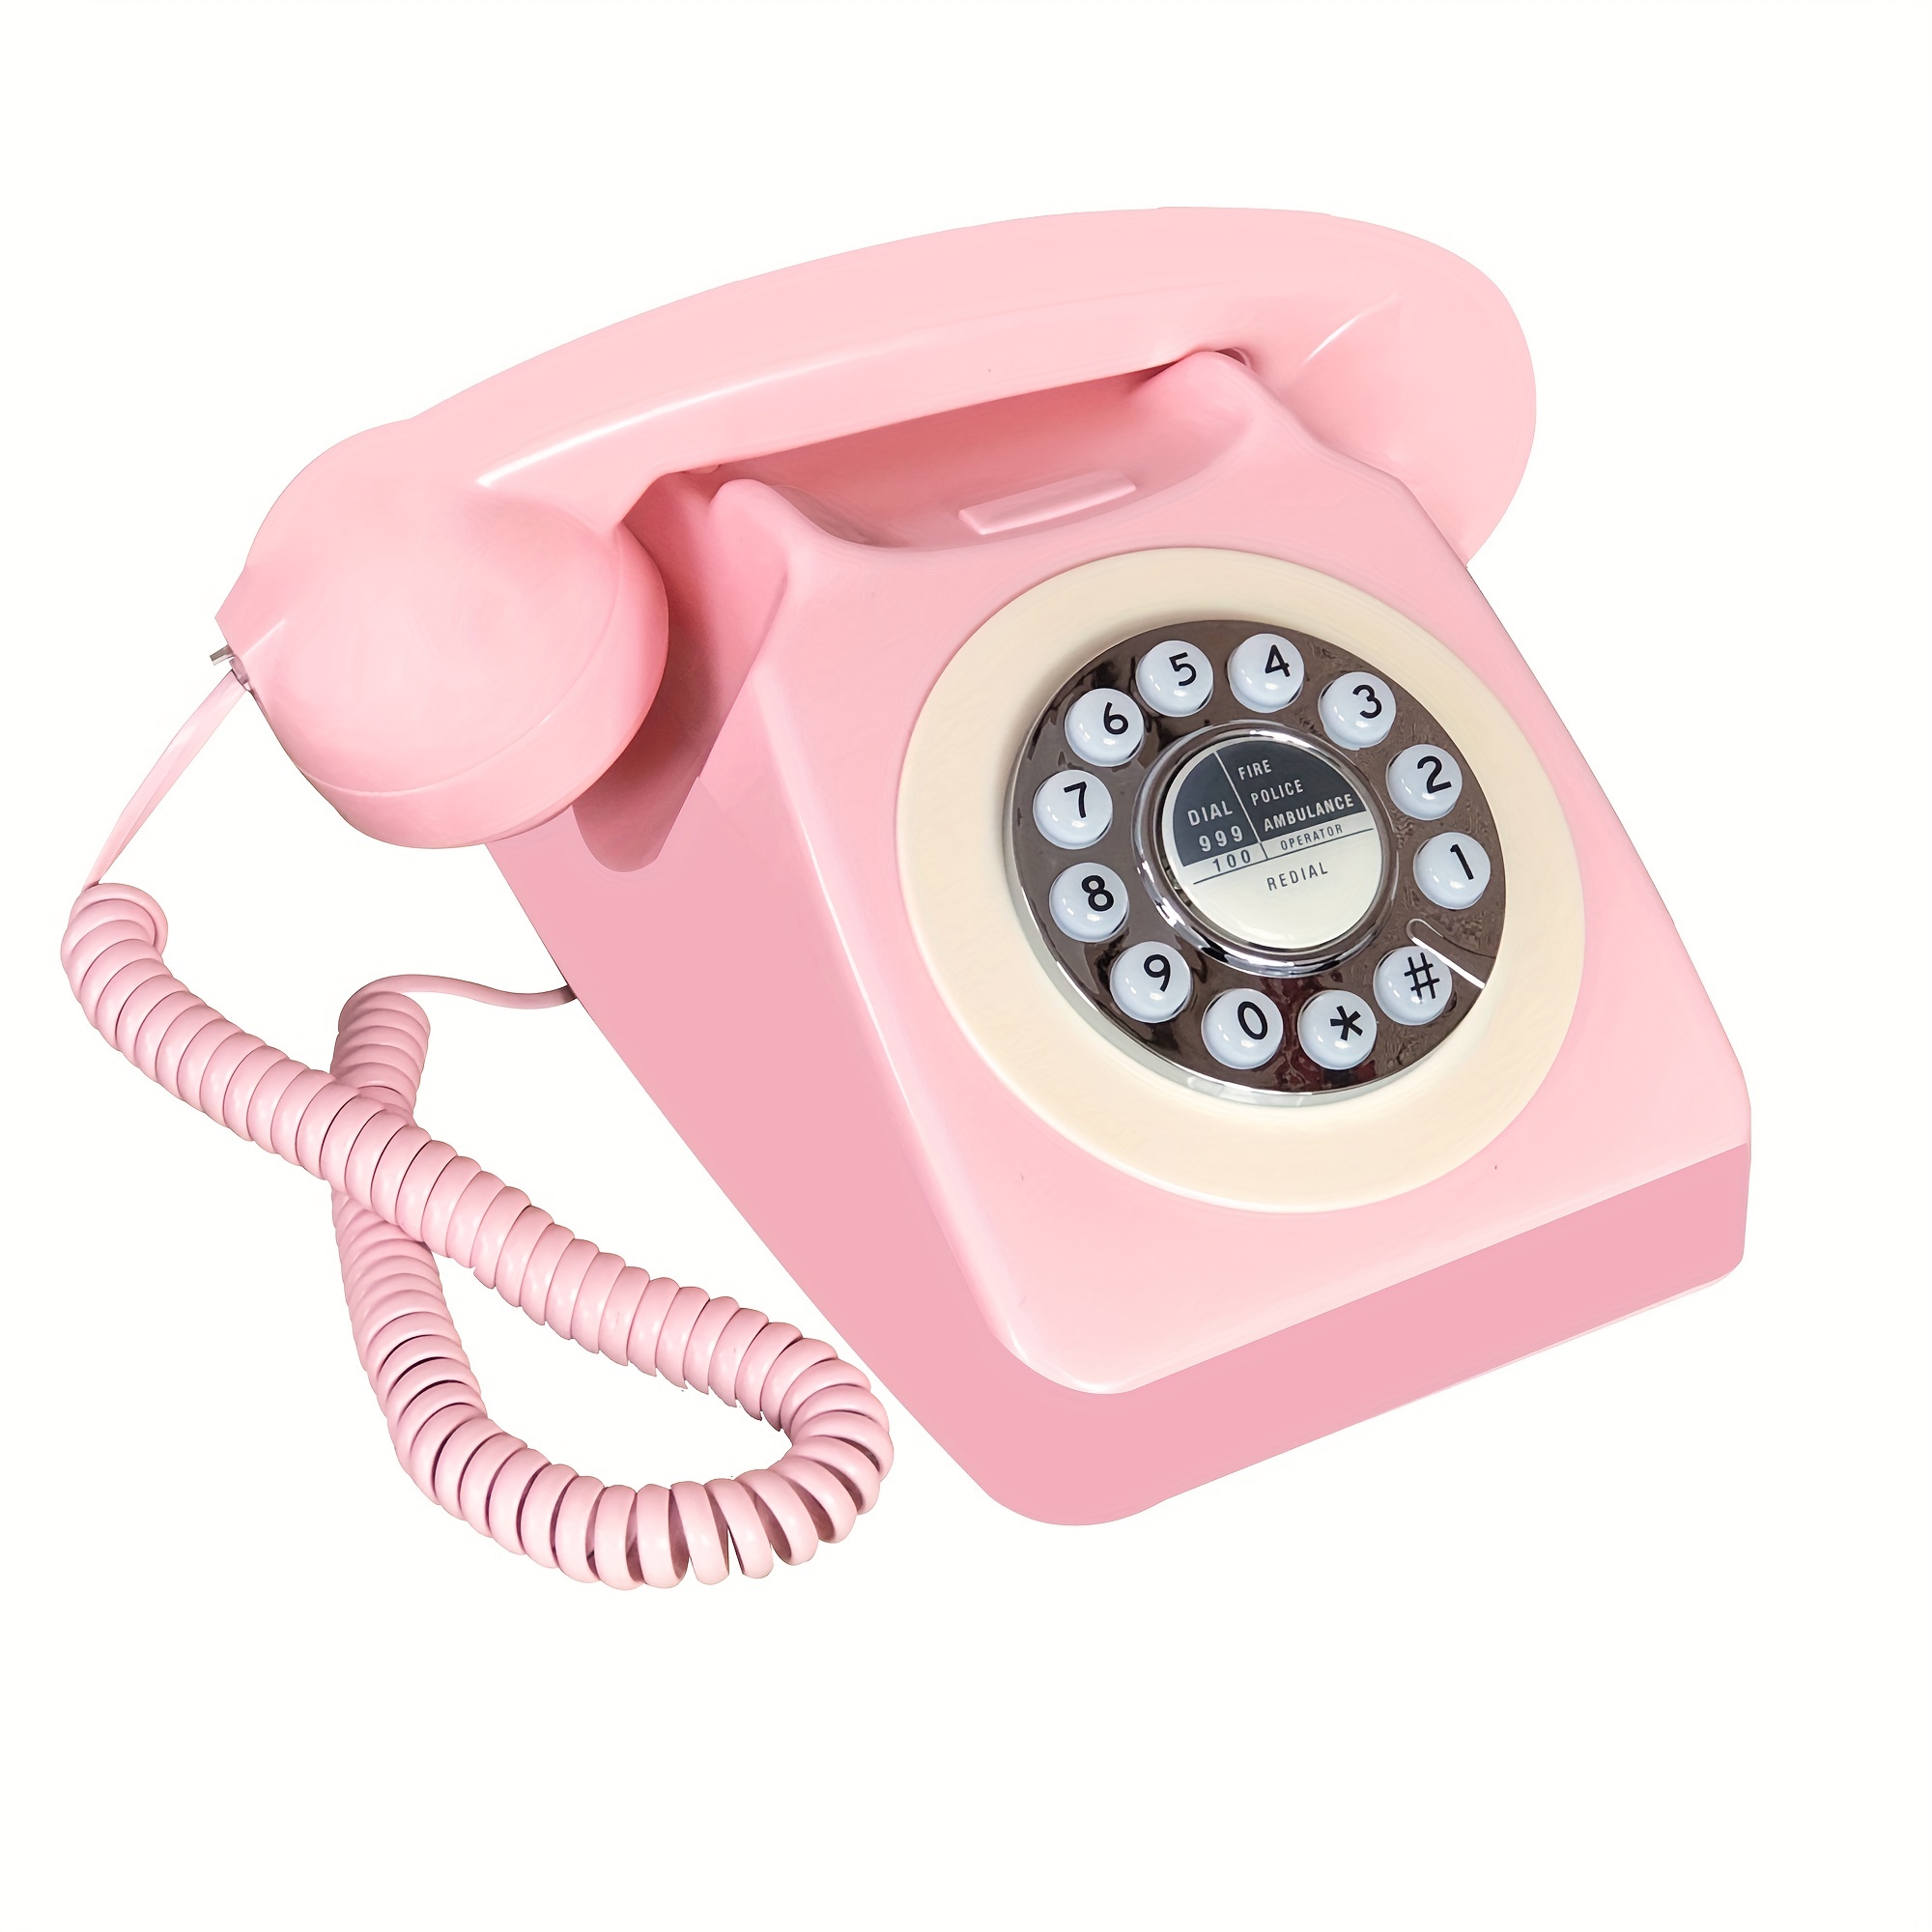 Teléfono vintage, teléfono fijo retro de cerámica para el hogar